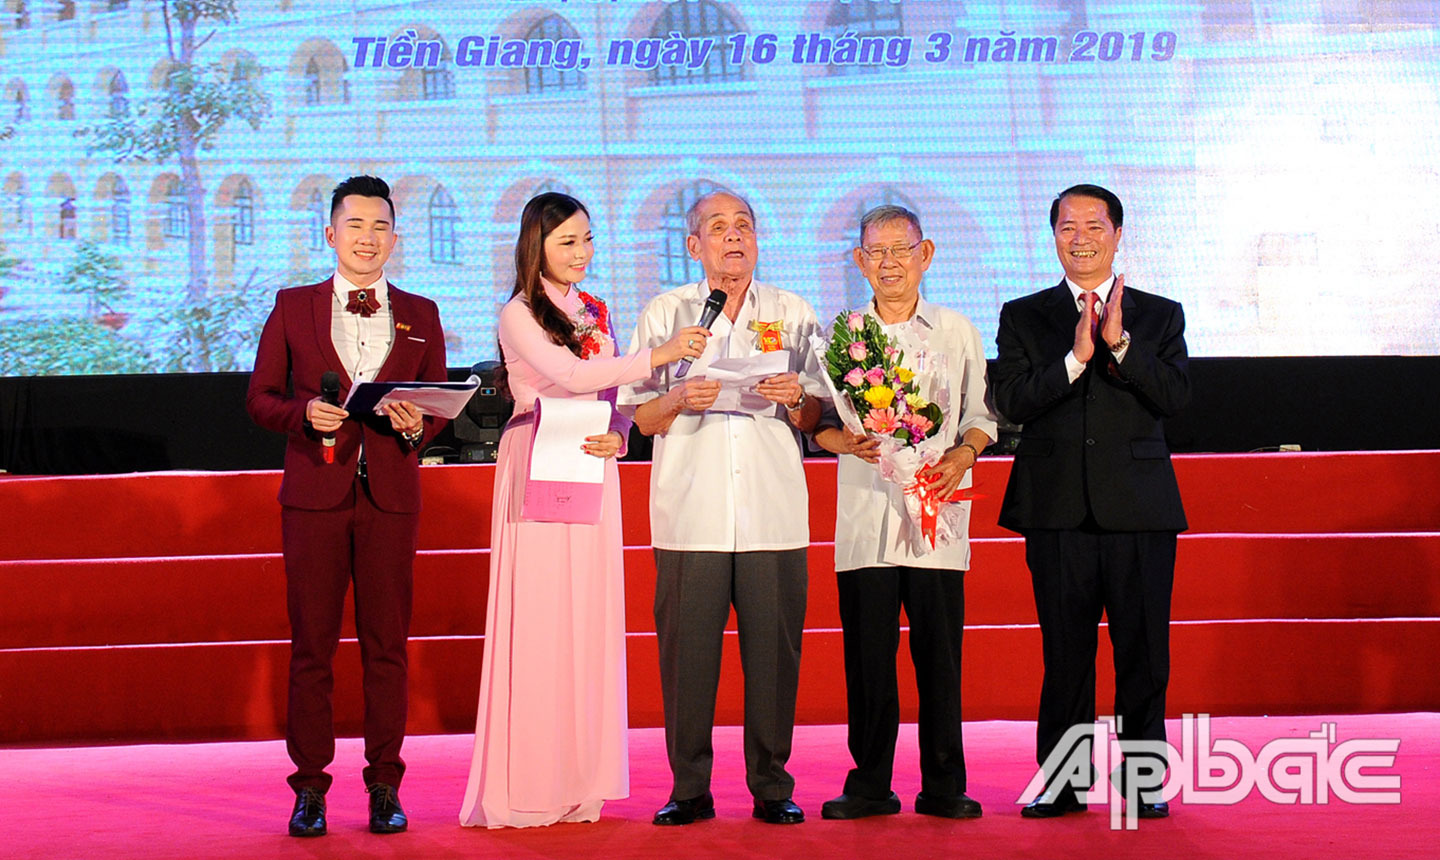 Cựu học sinh Lê Quang Thành (đứng giữa) về tham dự Lễ kỷ niệm 140 năm Ngày thành lập Trường THPT Nguyễn Đình Chiểu 17-3-1879 - 17-3-2019. Ảnh: DUY NHỰT